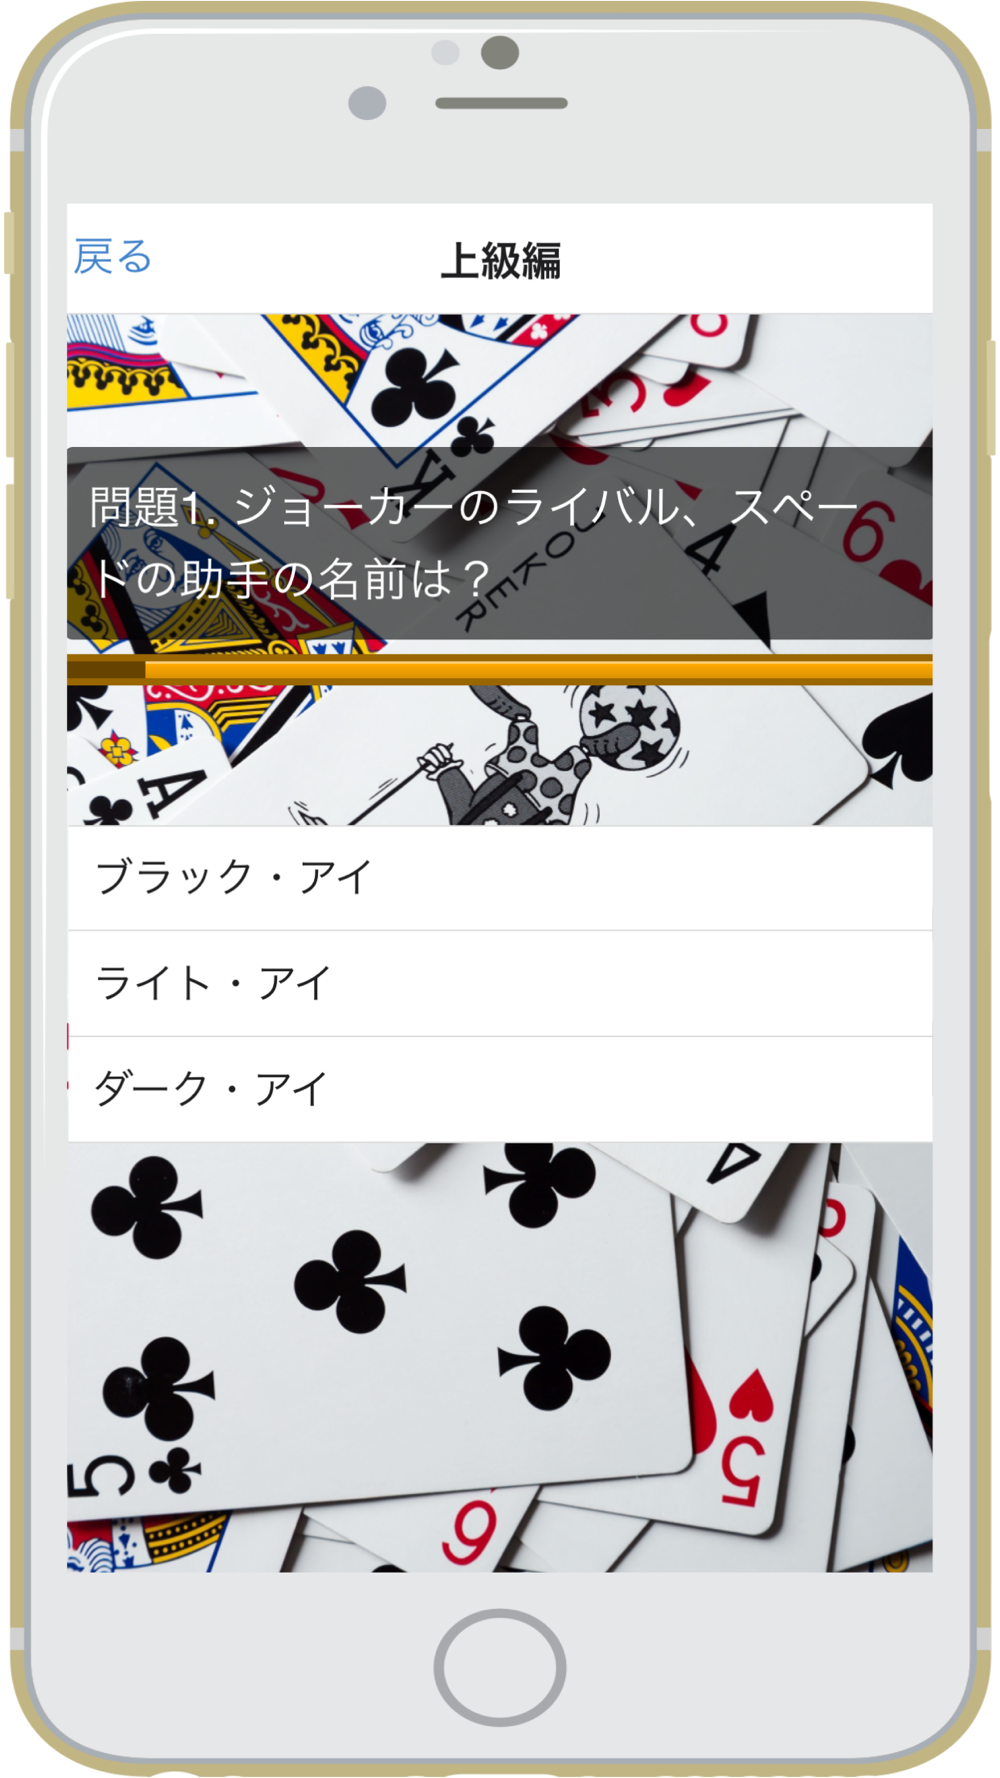 クイズ For 怪盗ジョーカー Quiz For Kaitou Joker Free Download App For Iphone Steprimo Com